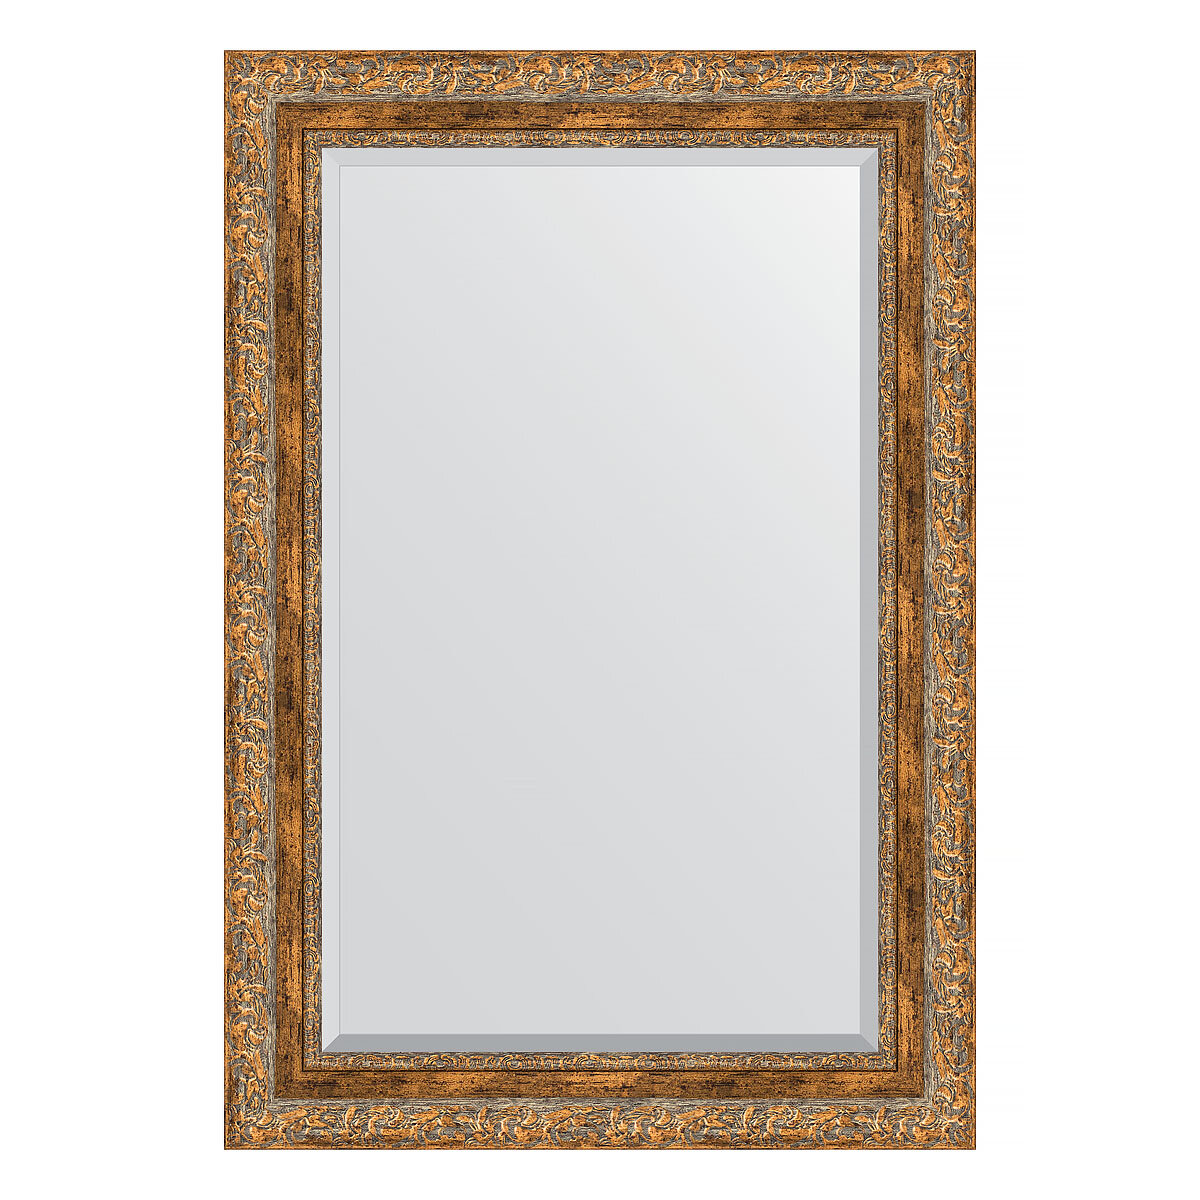 Зеркало настенное с фацетом EVOFORM в багетной раме виньетка античная бронза, 65х95 см, для гостиной, прихожей, спальни и ванной комнаты, BY 3436